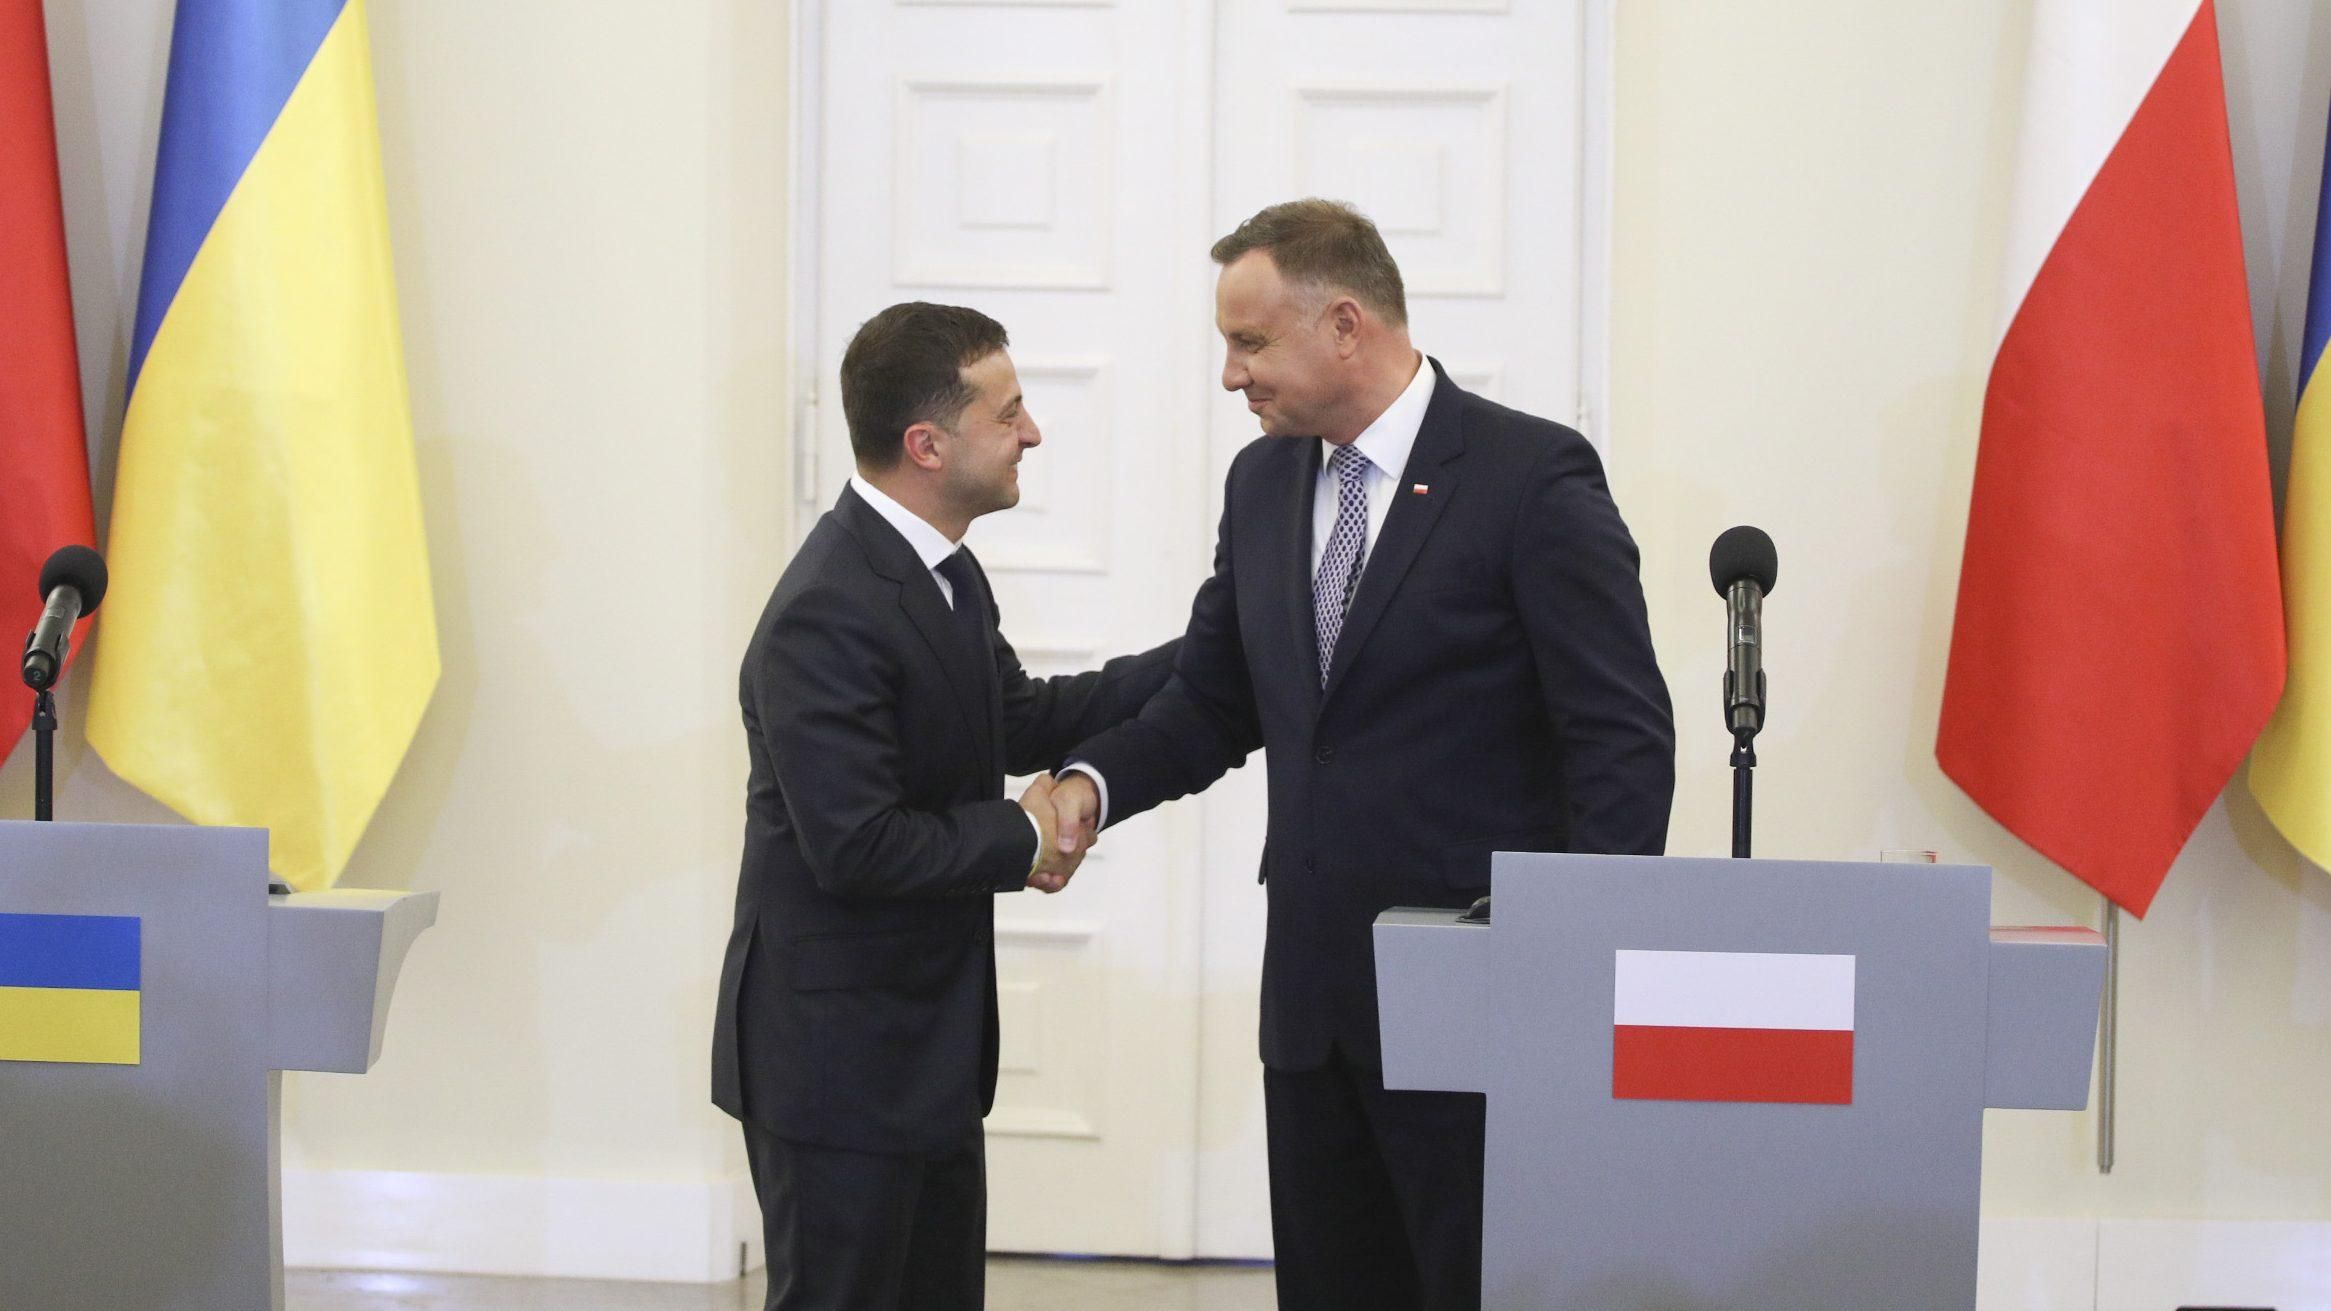 Діалог між Україною та Польщею розпочався?